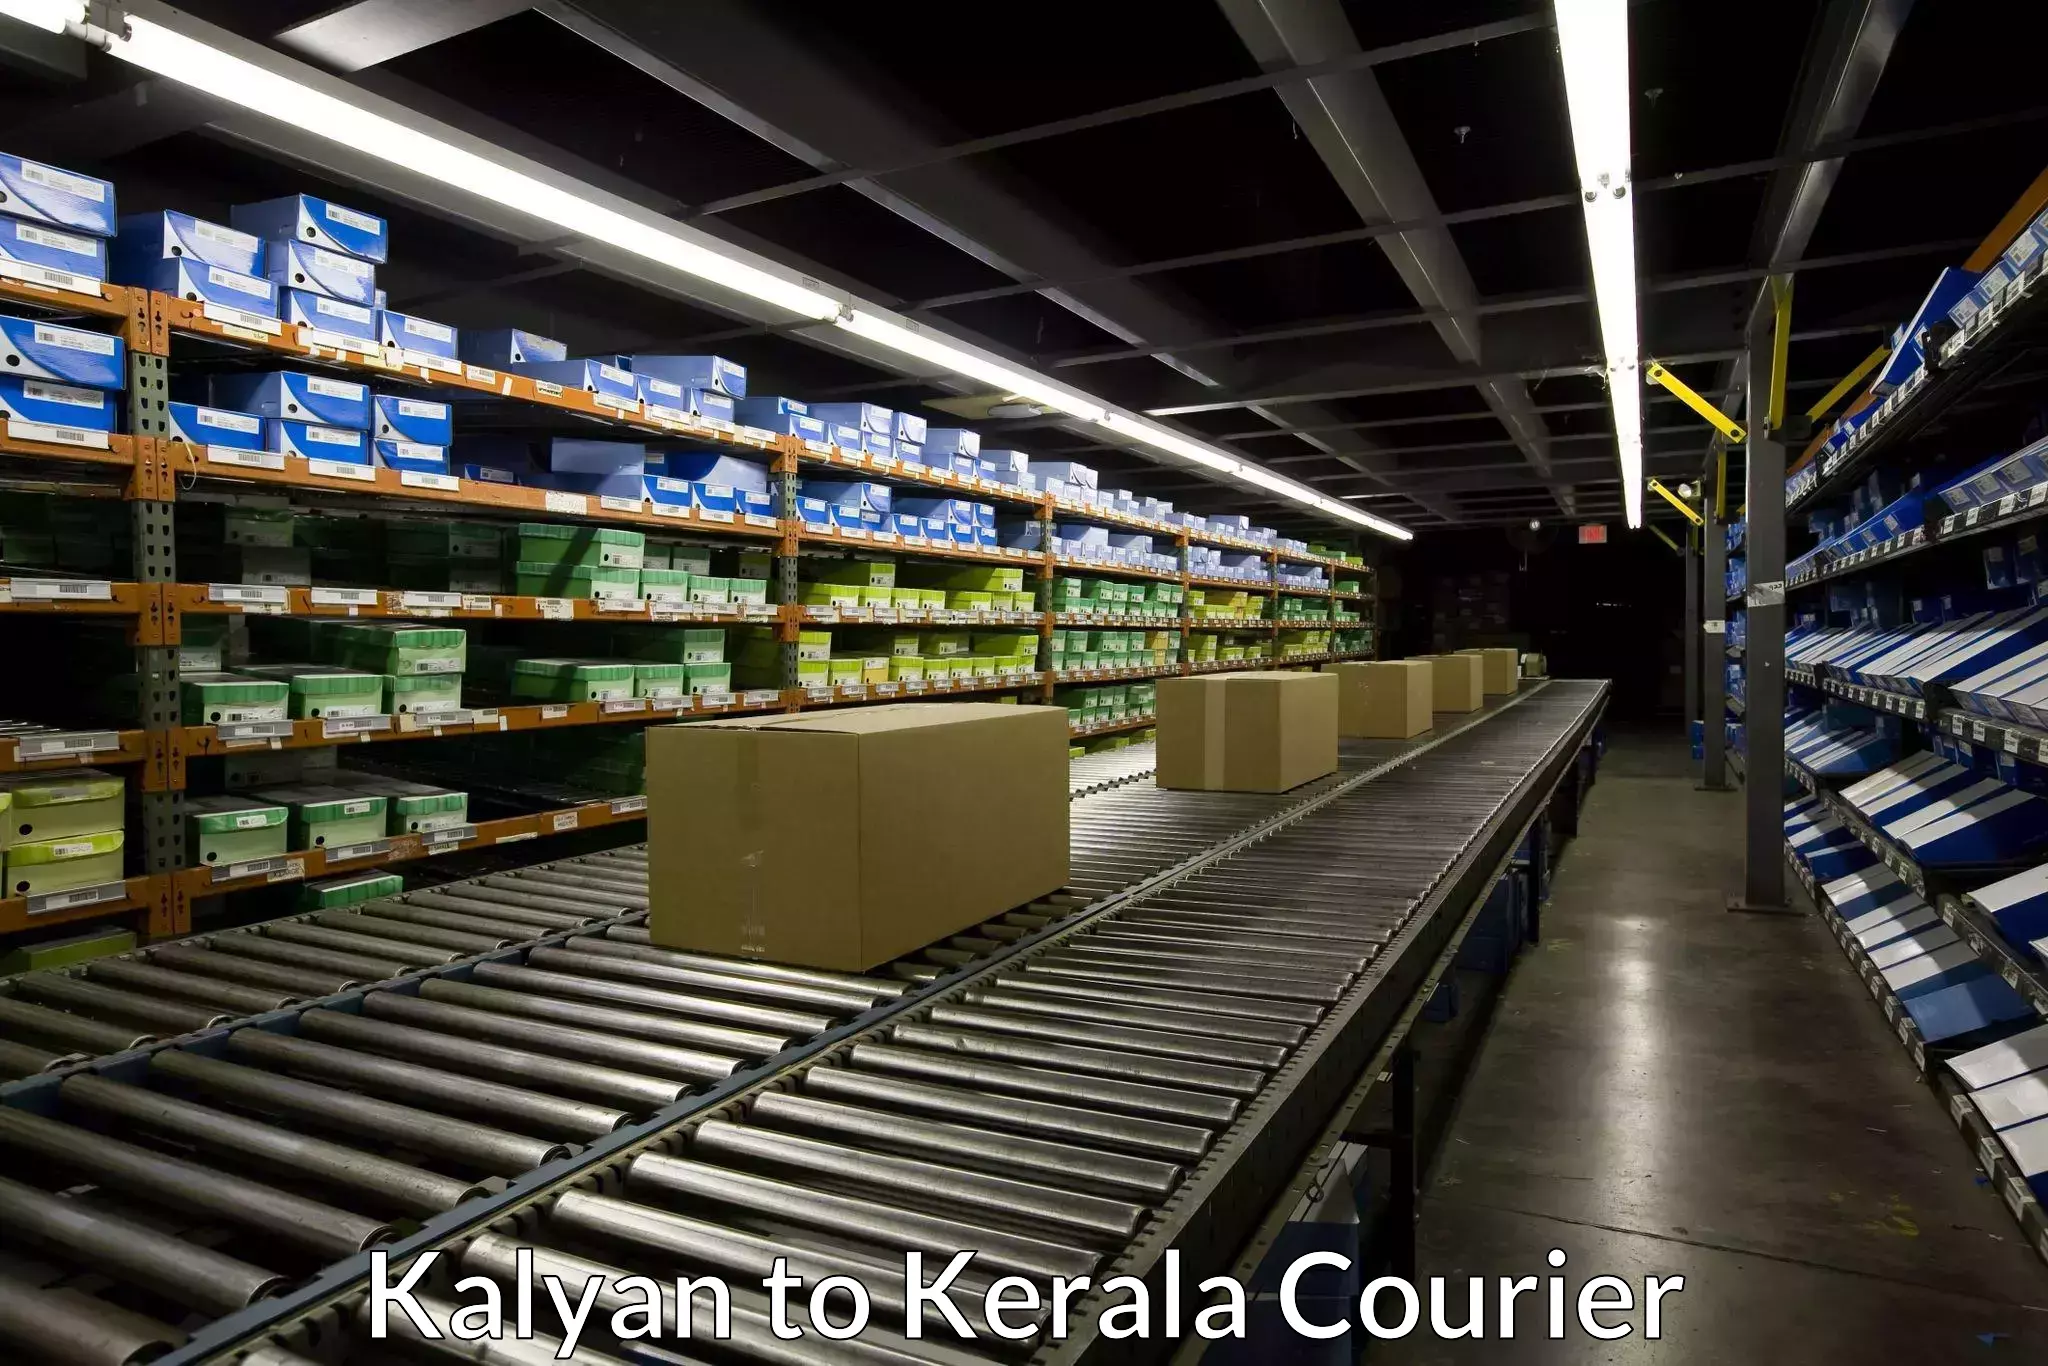 Digital shipping tools in Kalyan to Kerala